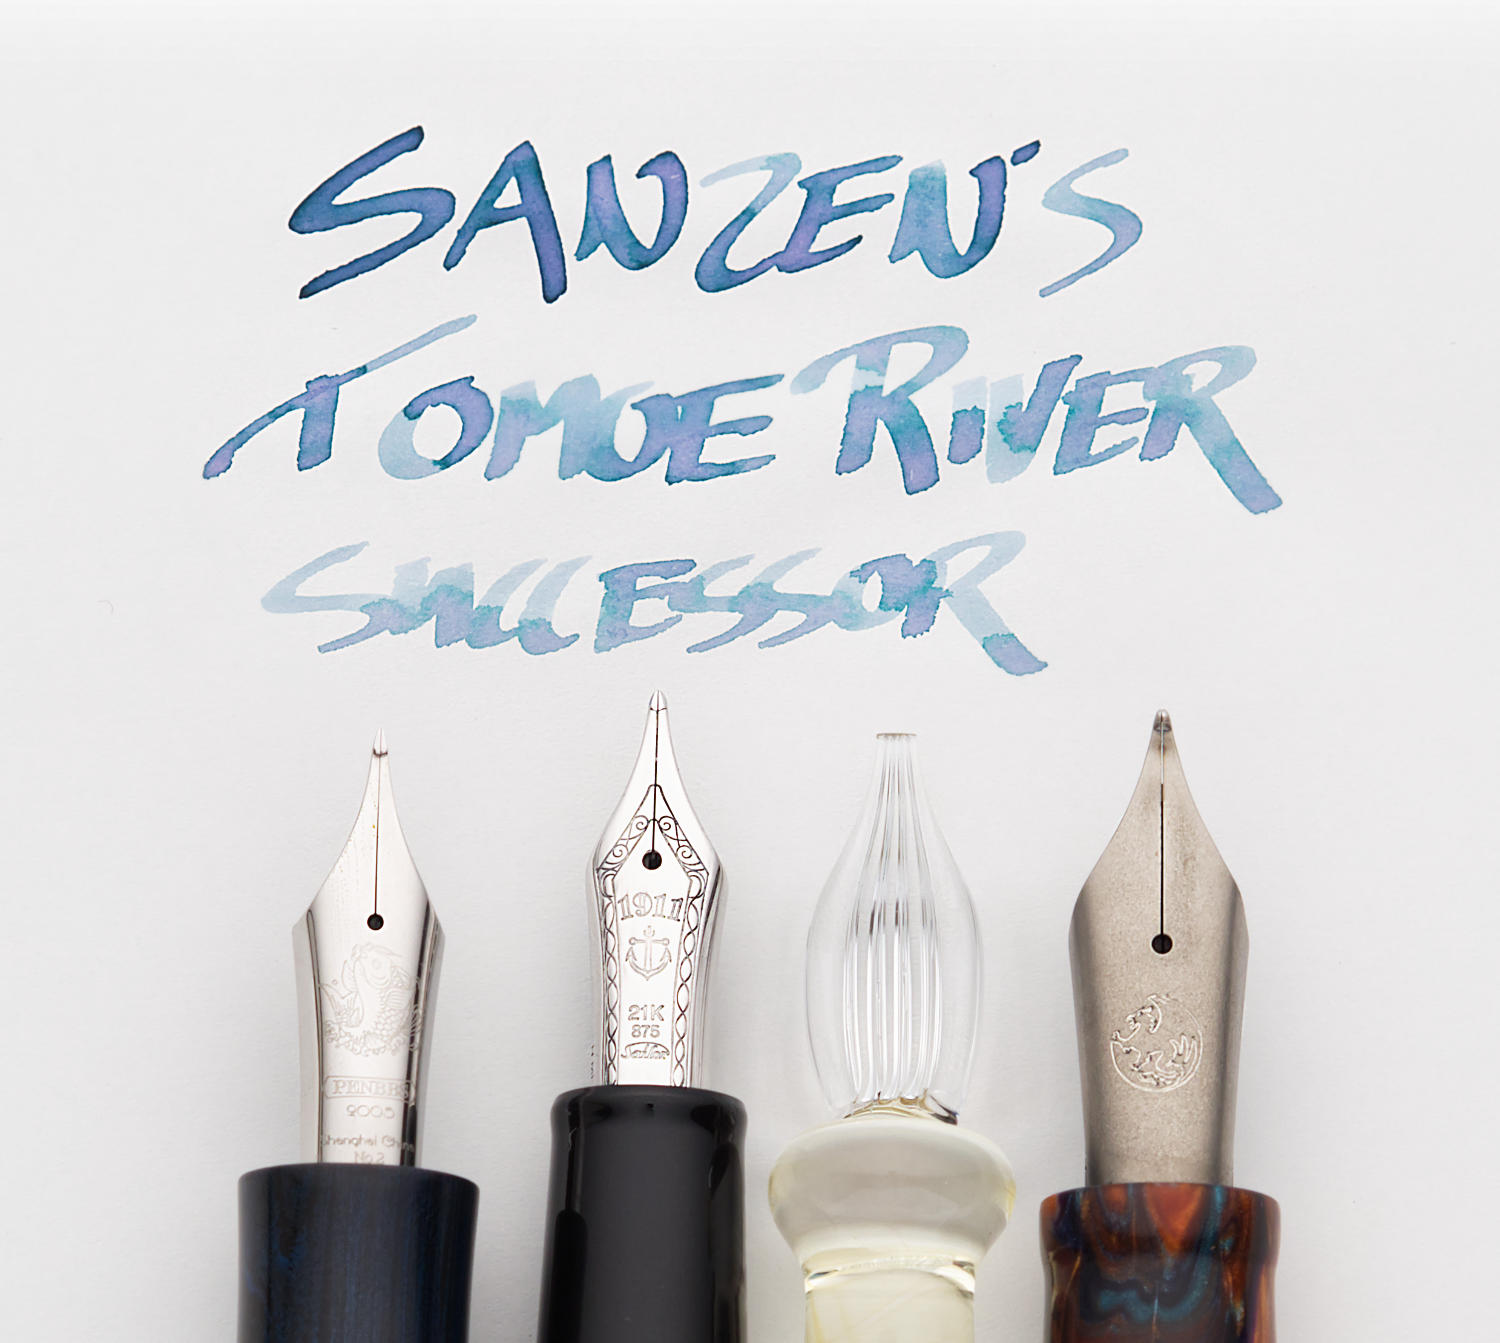 image from Sanzen's Tomoe River successor